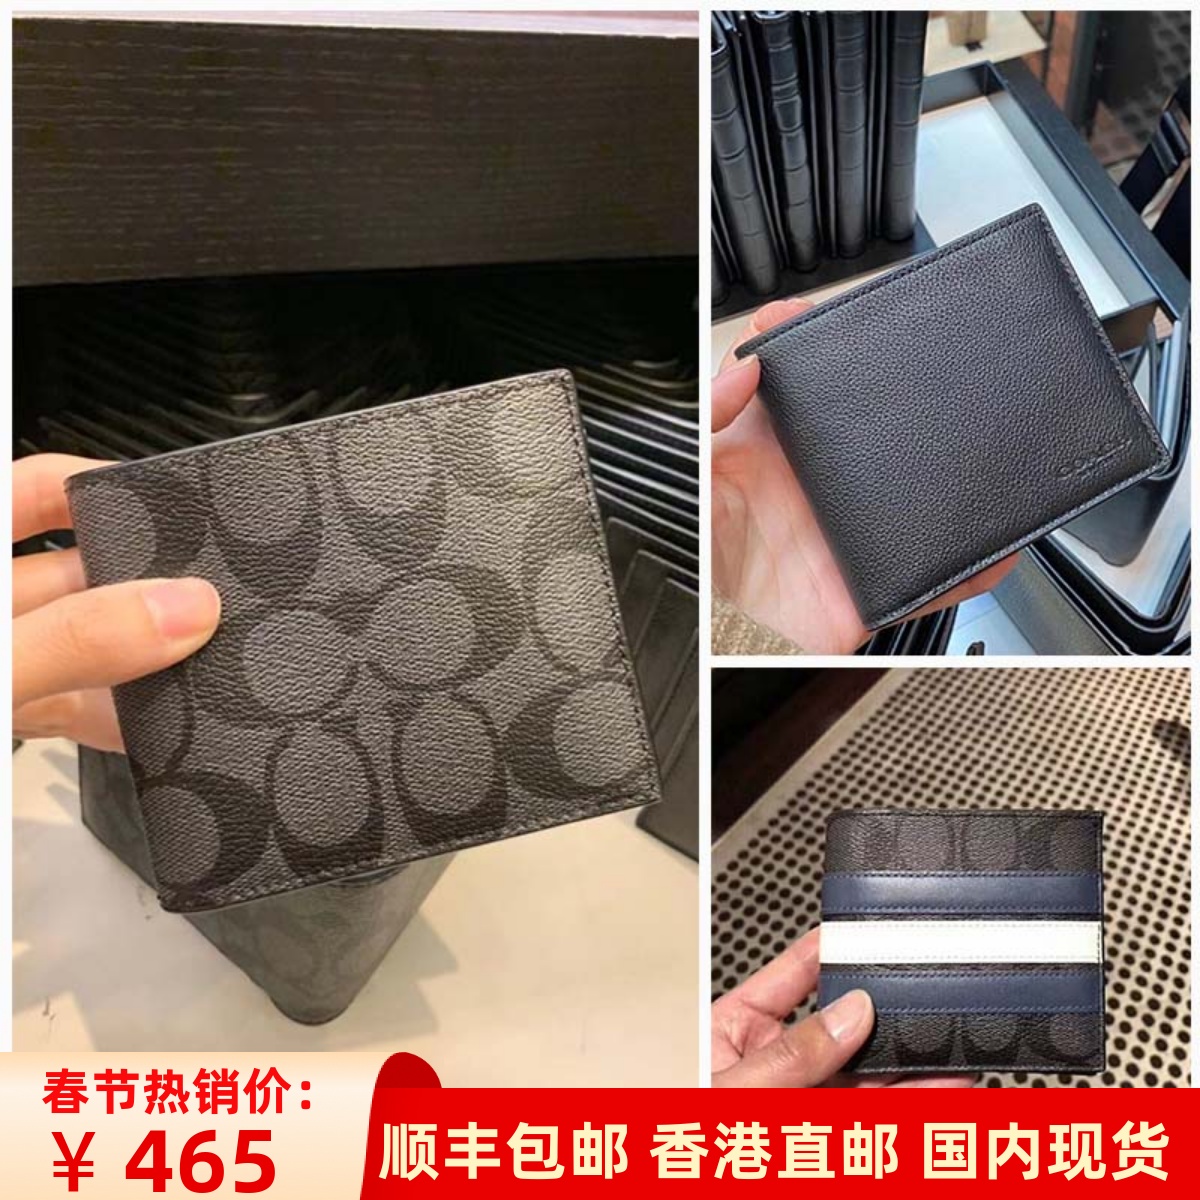 COACH メンズバッグ 財布 ショート メンズ ストライプ ブラック グレー ピュアレザー 二つ折り財布 カード入れ ギフトボックス